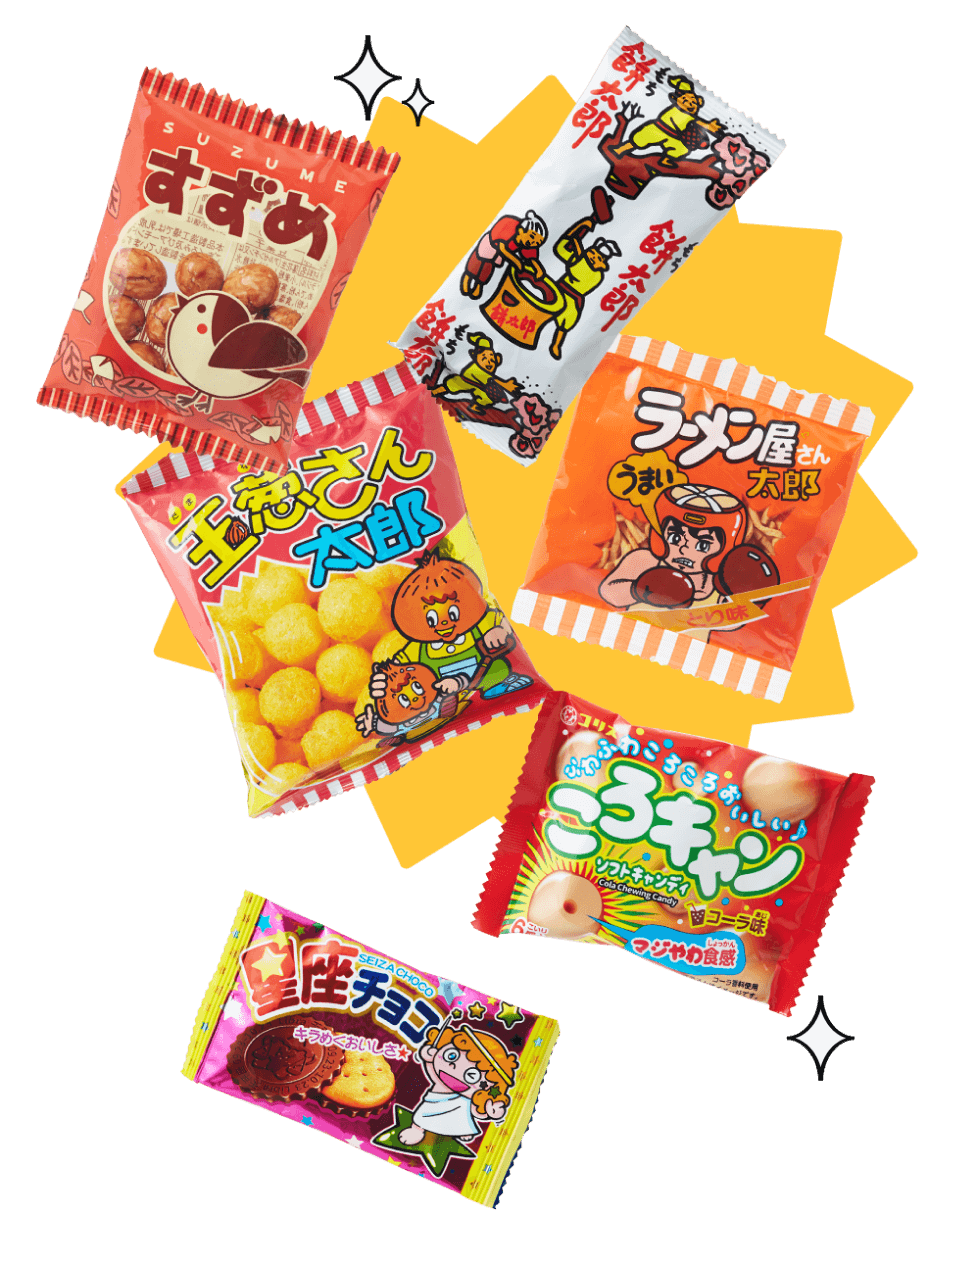 Dagashi candy